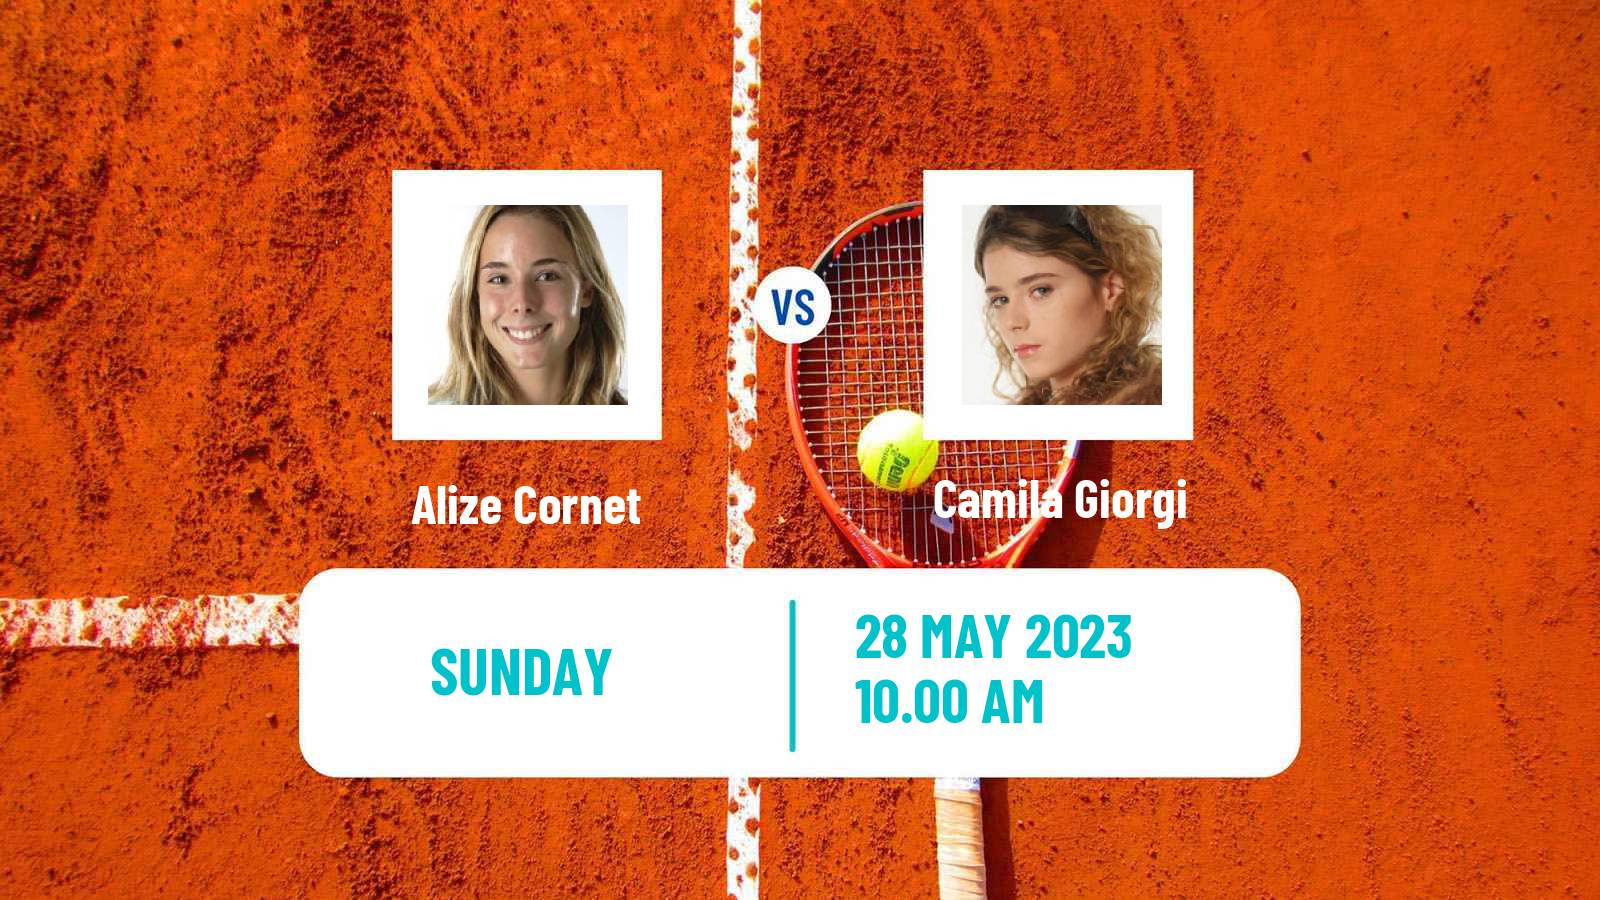 Tennis WTA Roland Garros Alize Cornet - Camila Giorgi